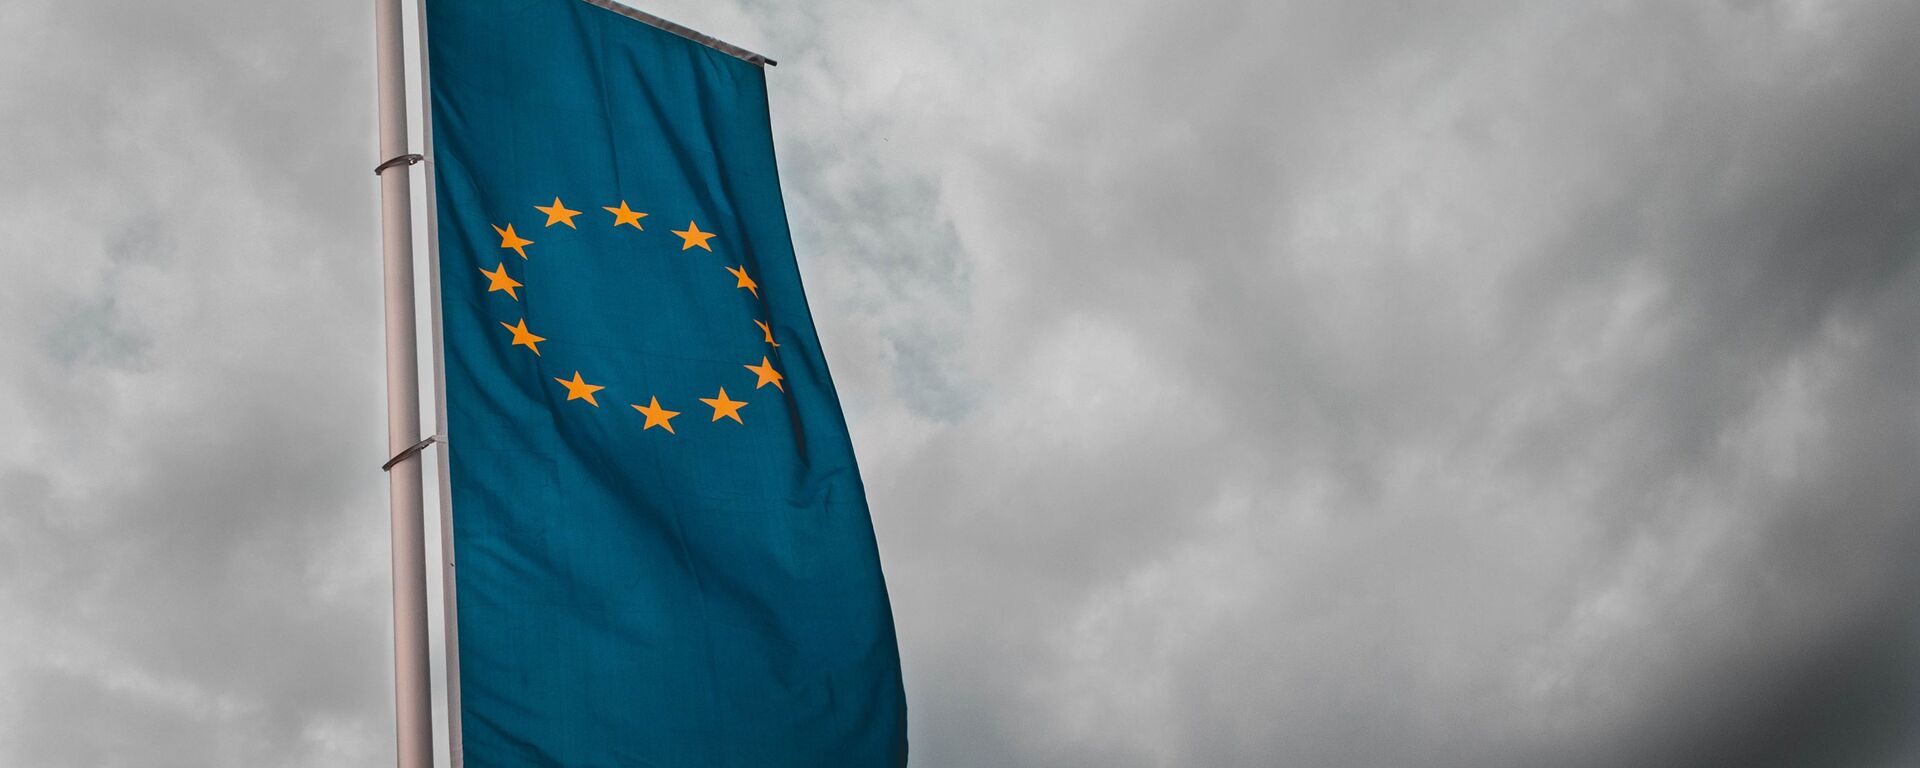 Bandera de la Unión Europea - Sputnik Mundo, 1920, 19.04.2021